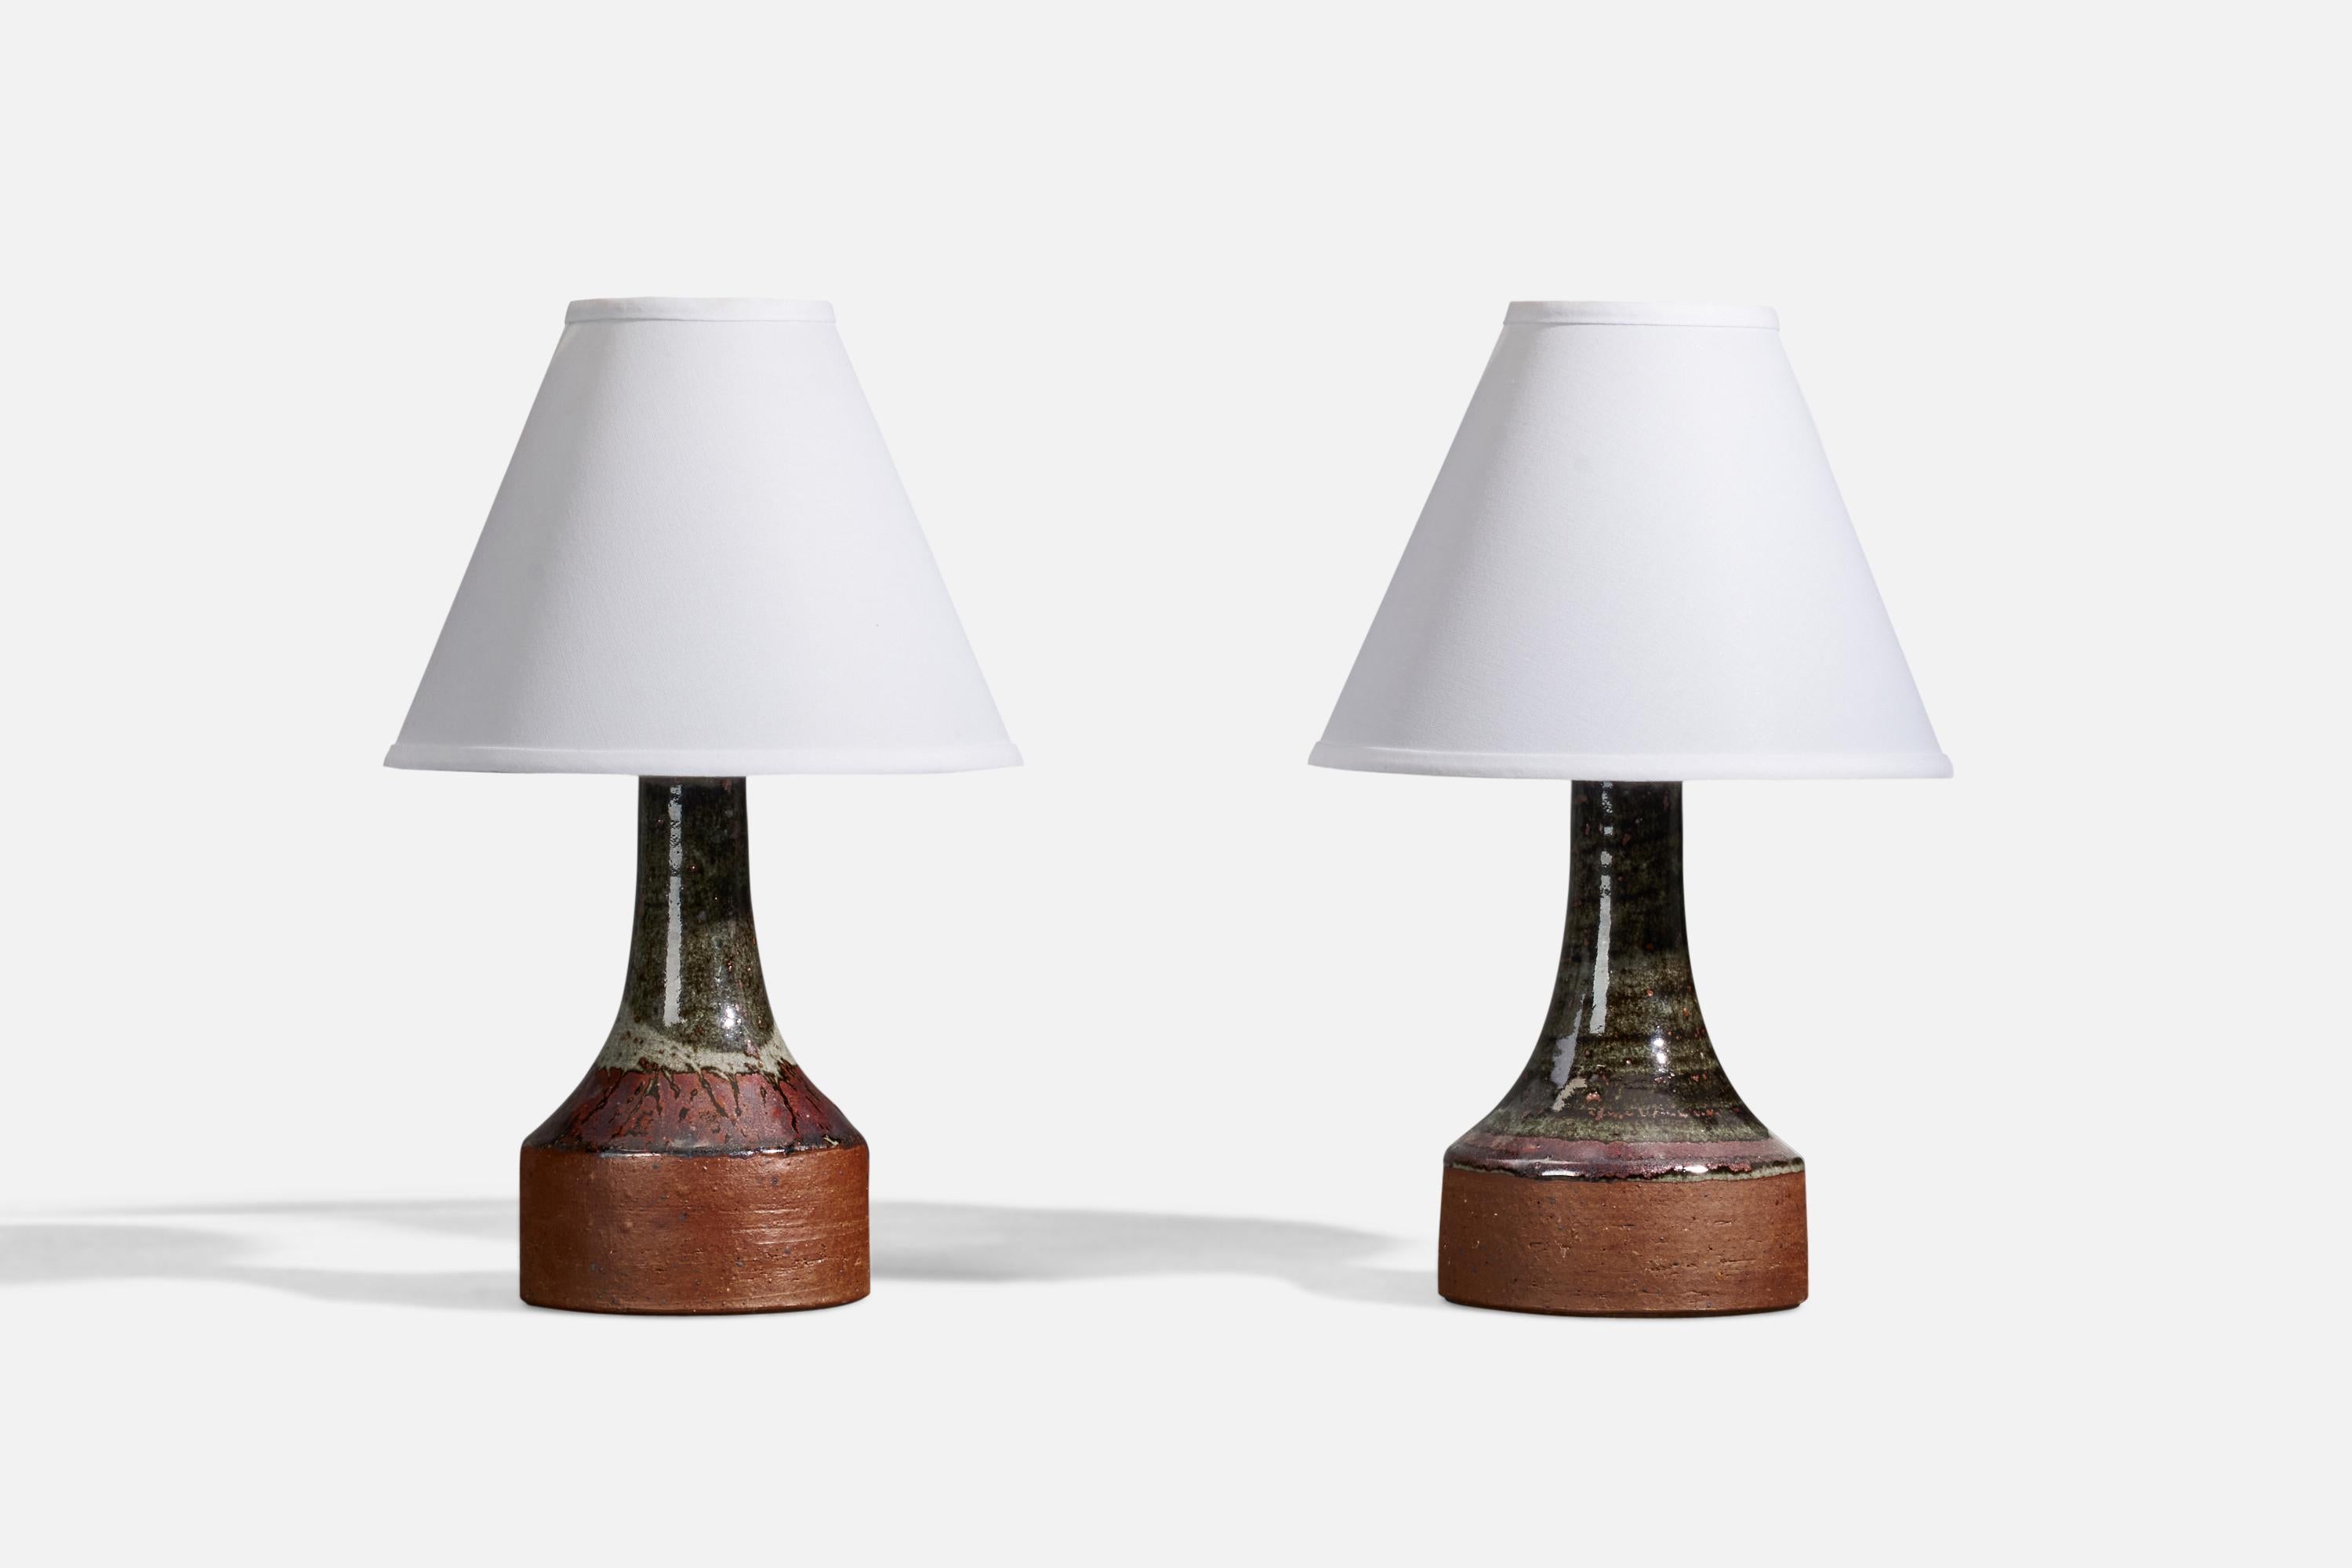 Ein Paar Tischlampen, entworfen und hergestellt von Helle Allpass in ihrem Studio, Dänemark, 1960er Jahre. Gestempelt.

Die angegebenen Maße verstehen sich ohne Lampenschirme. Höhe einschließlich Sockel. 

Die Glasur weist braun-grüne Farben